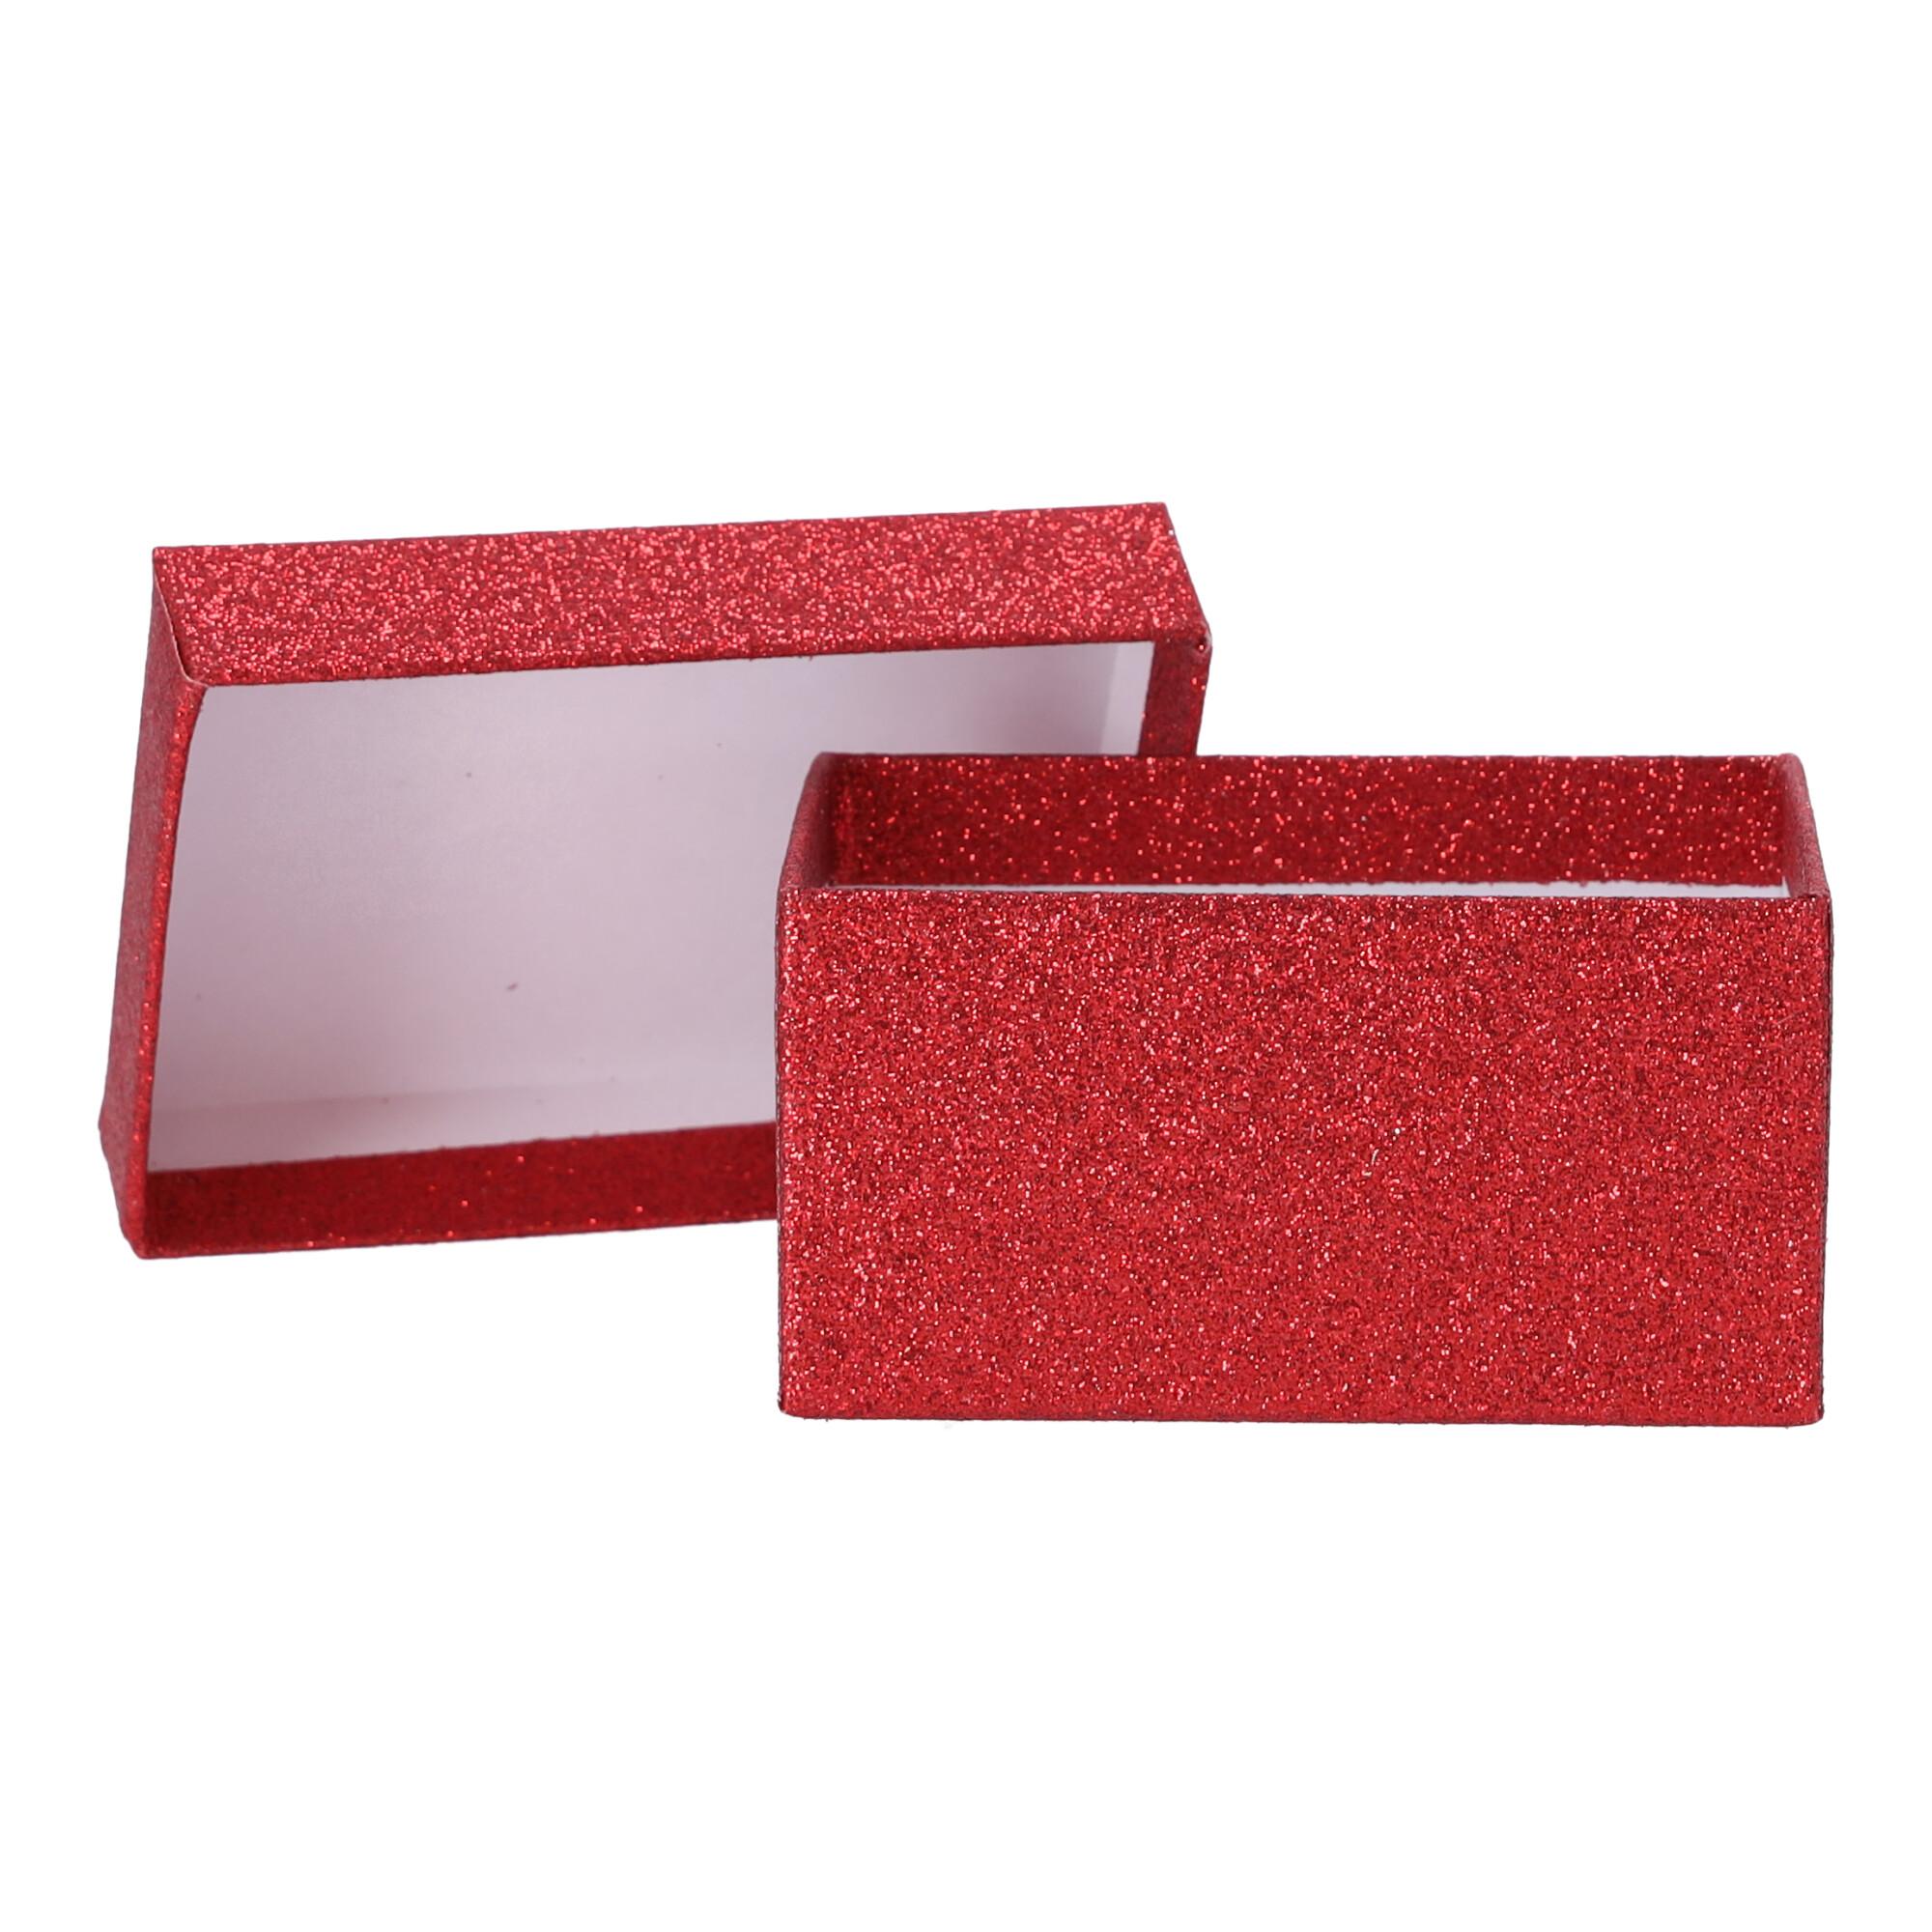 Małe pudełko prezentowe 11x7,5x5,5 cm - Czerwone